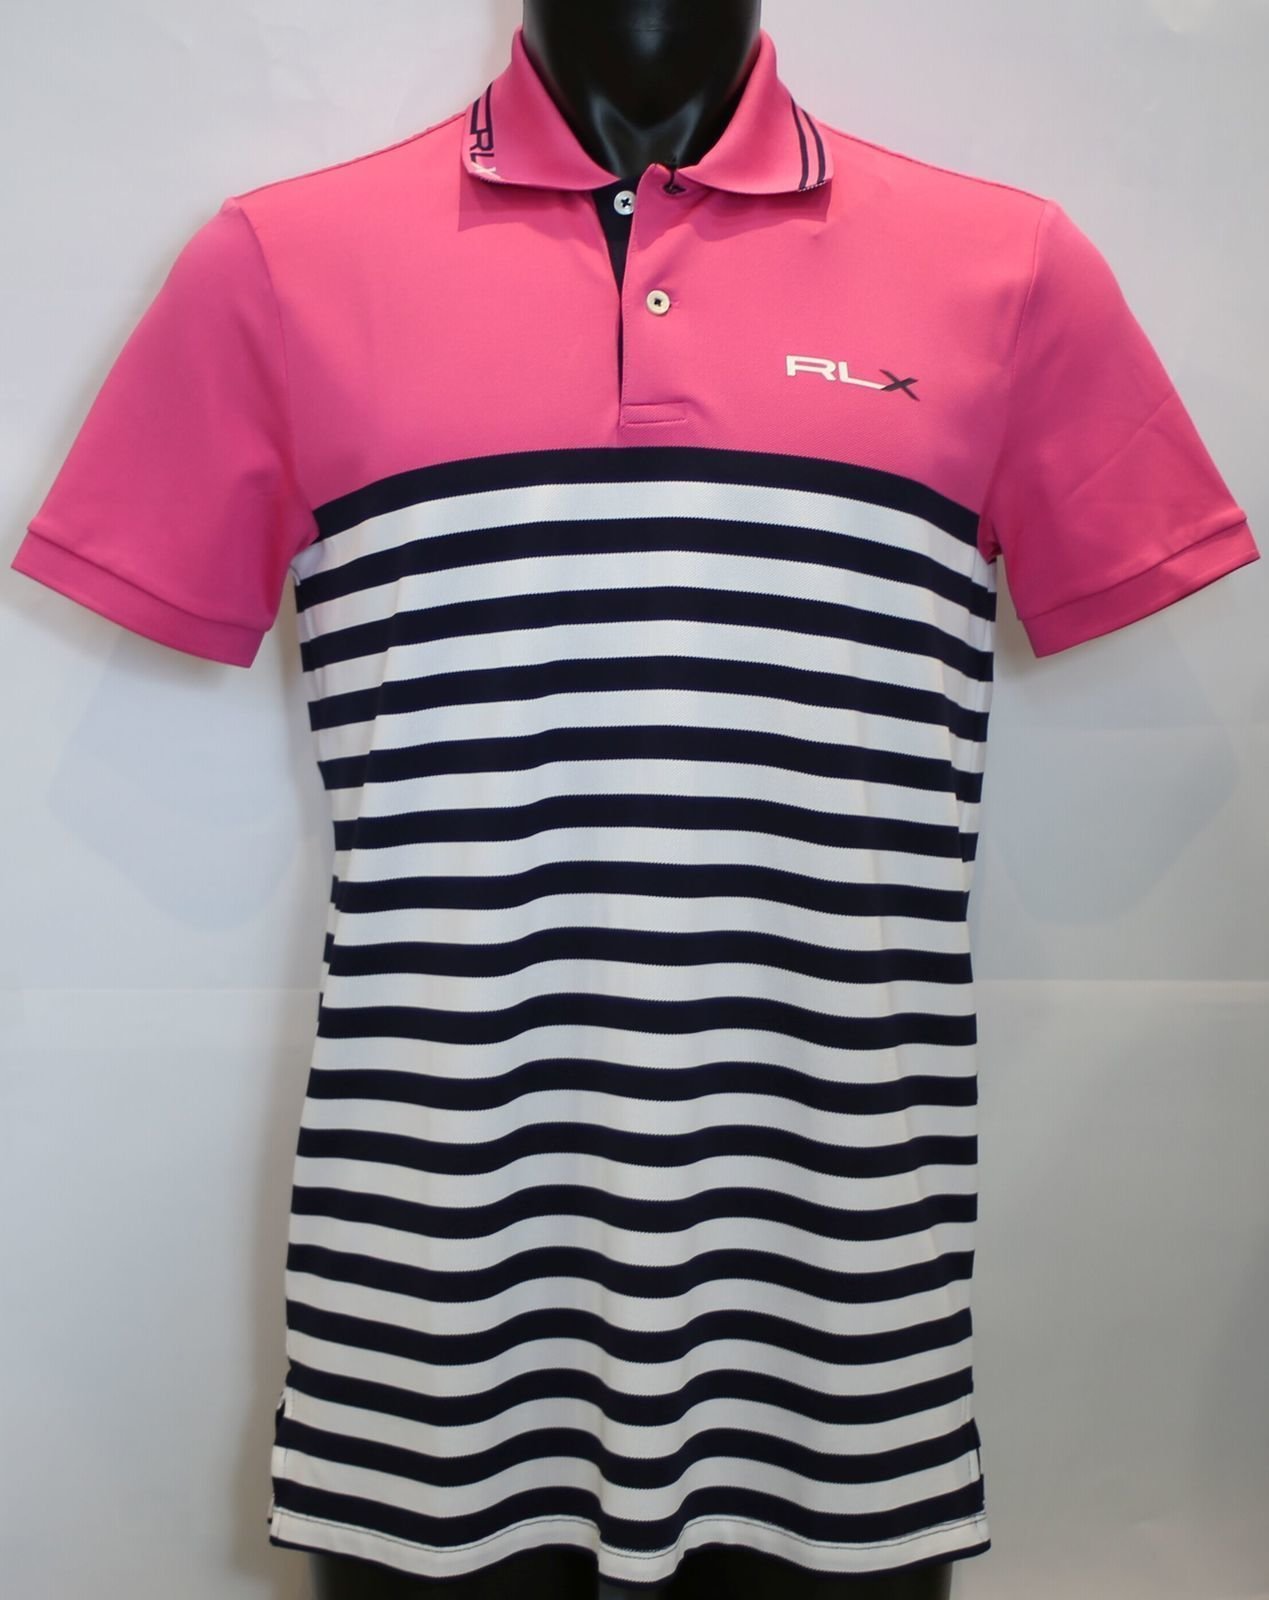 Koszulka Polo Ralph Lauren Light Weight Tech Pique Pink/Navy M